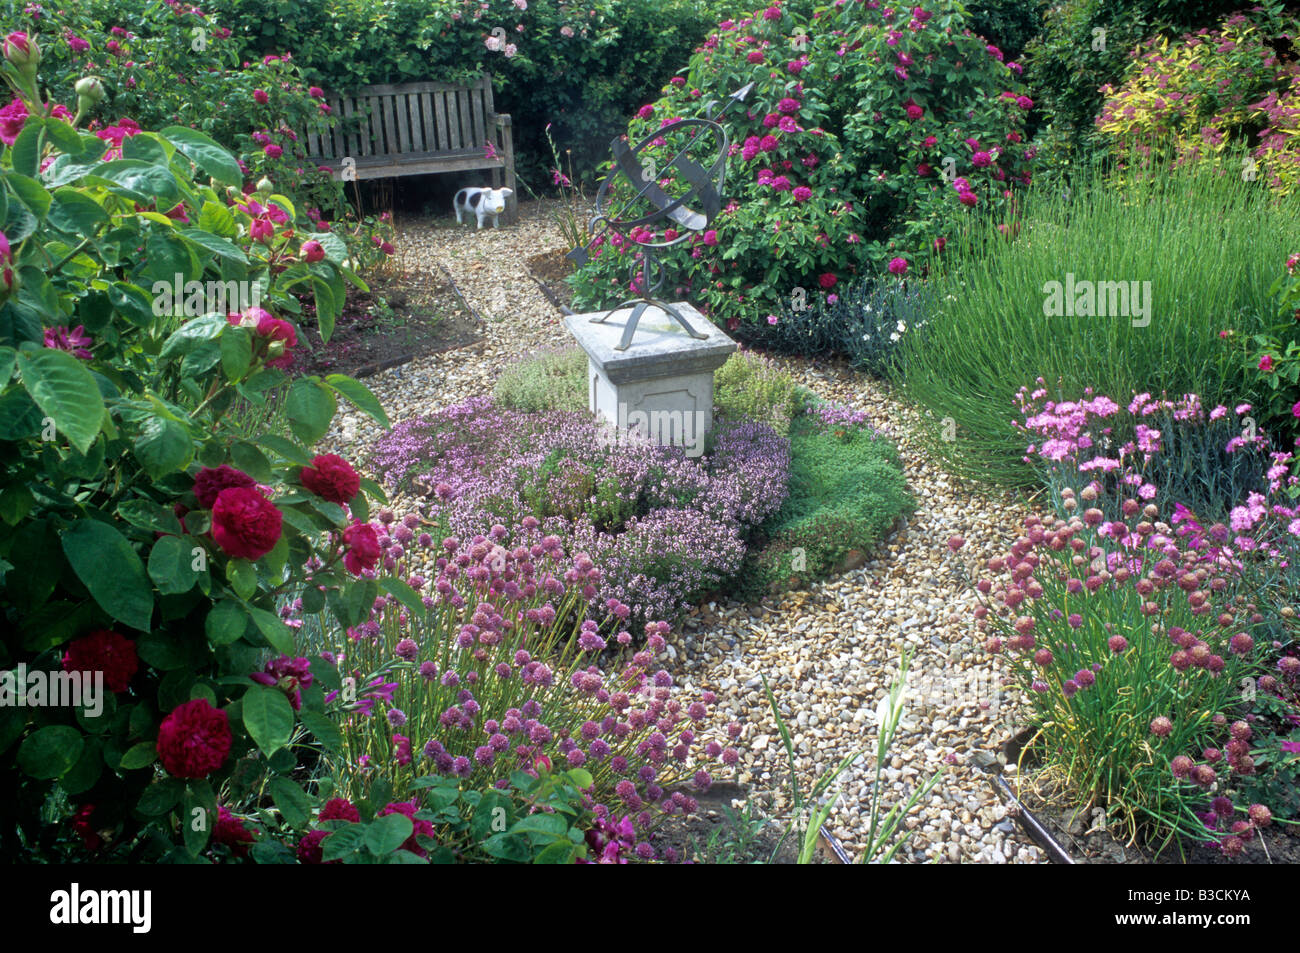 Chemin de gravier herbes Sundial thymus allium socle banc d'herbe rose roses fleurs de jardin design plantes Banque D'Images